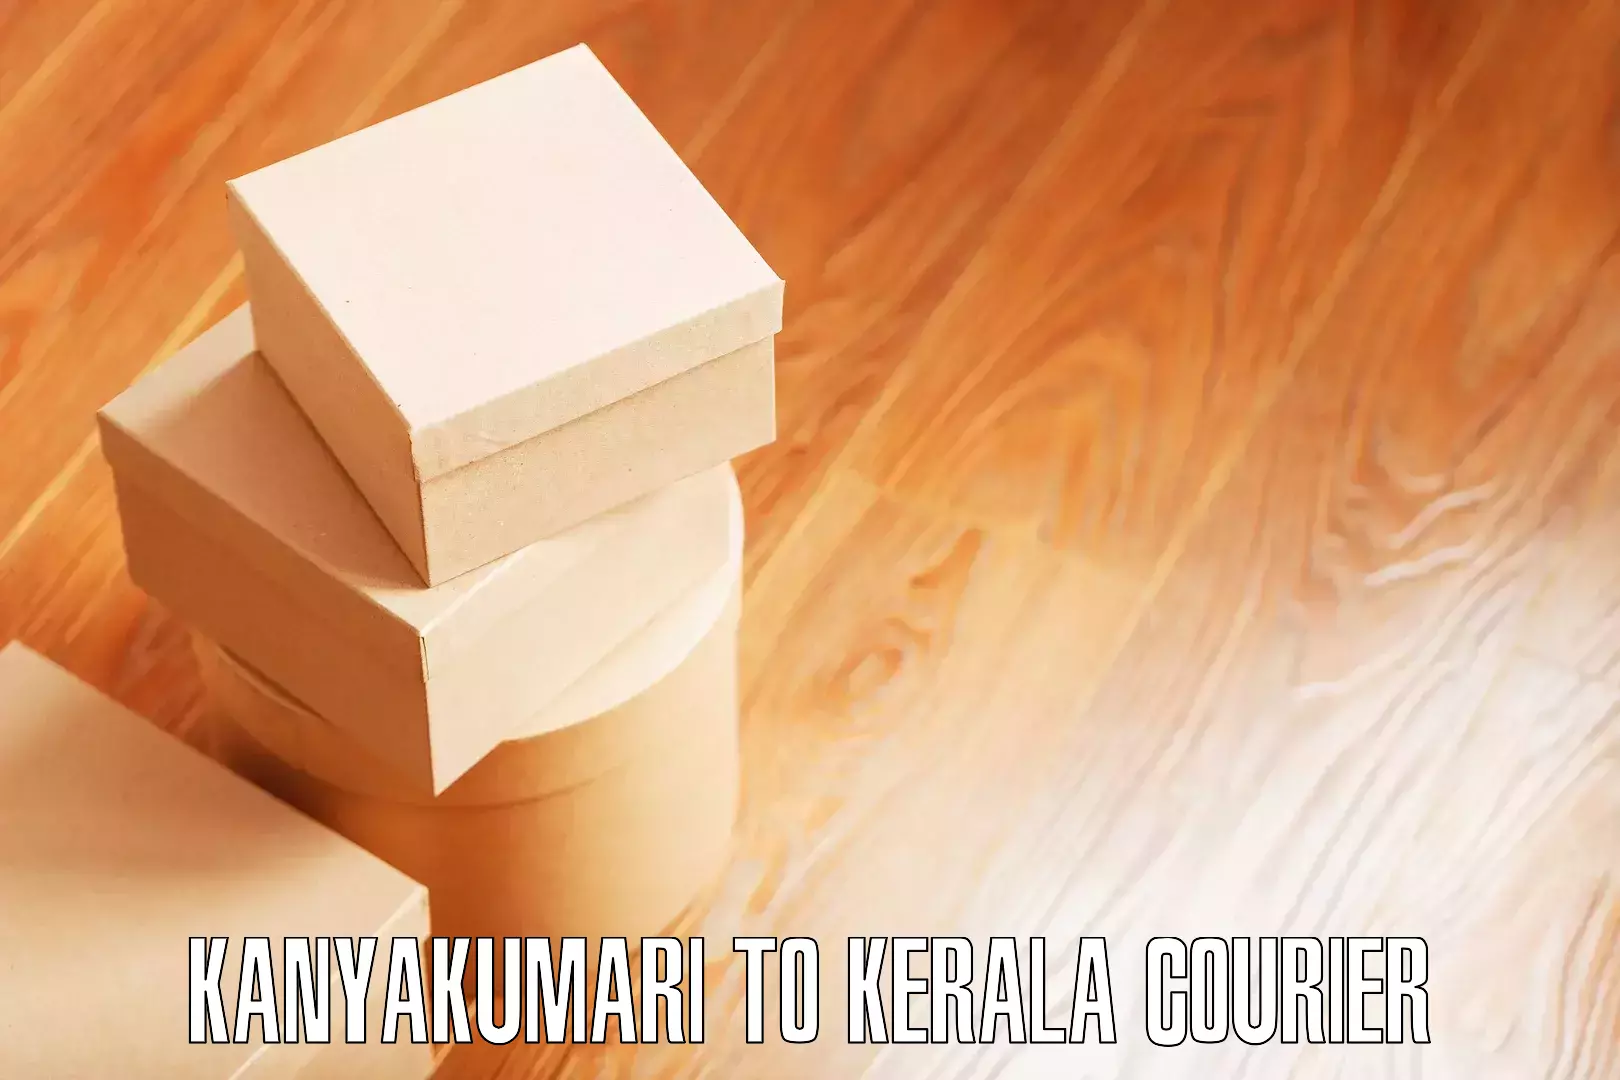 Cost-effective moving options in Kanyakumari to Mundakayam